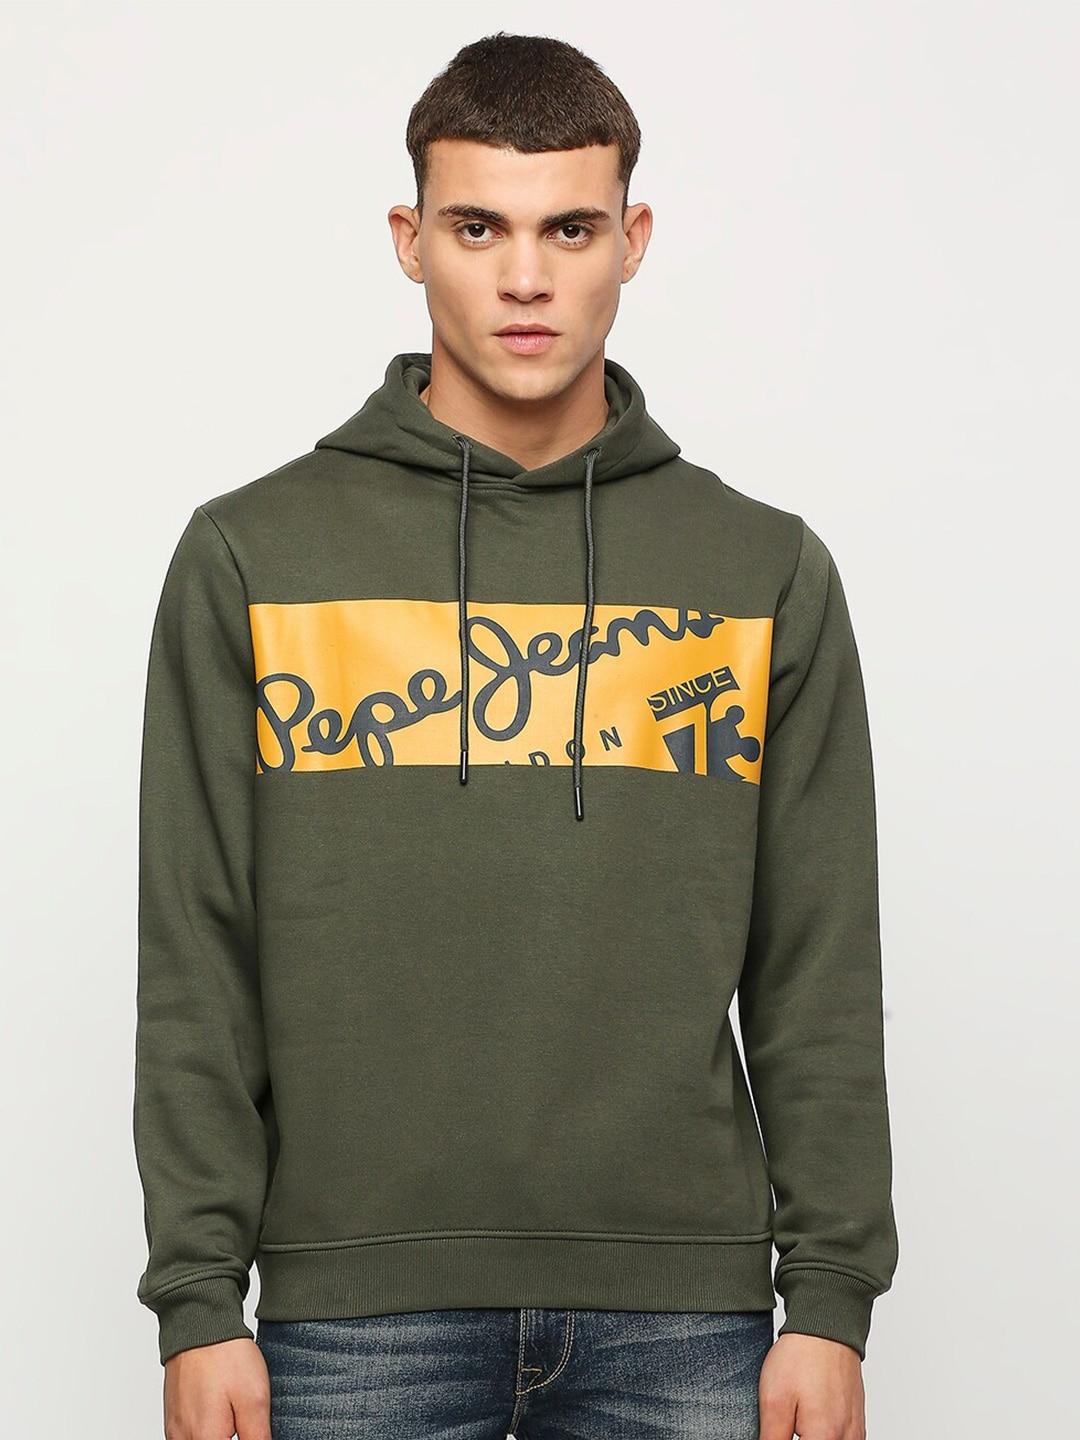 Pepe Jeans Typography Printed Hooded Sweatshirt